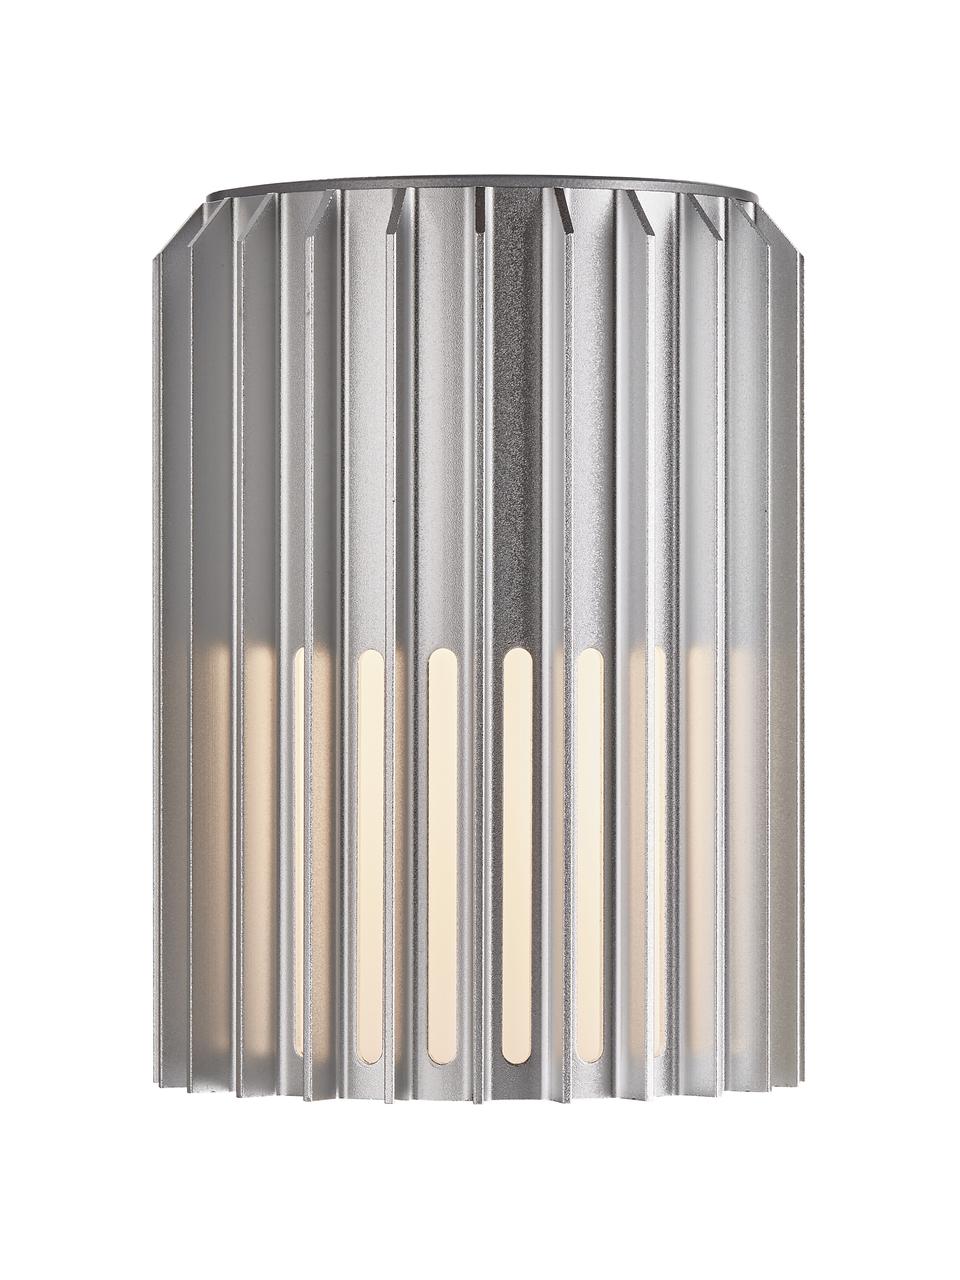 Outdoor wandlamp Matrix in zilverkleur, Lampenkap: gecoat metaal, Diffuser: kunststof, Zilverkleurig, opaalwit, 12 x 17 cm